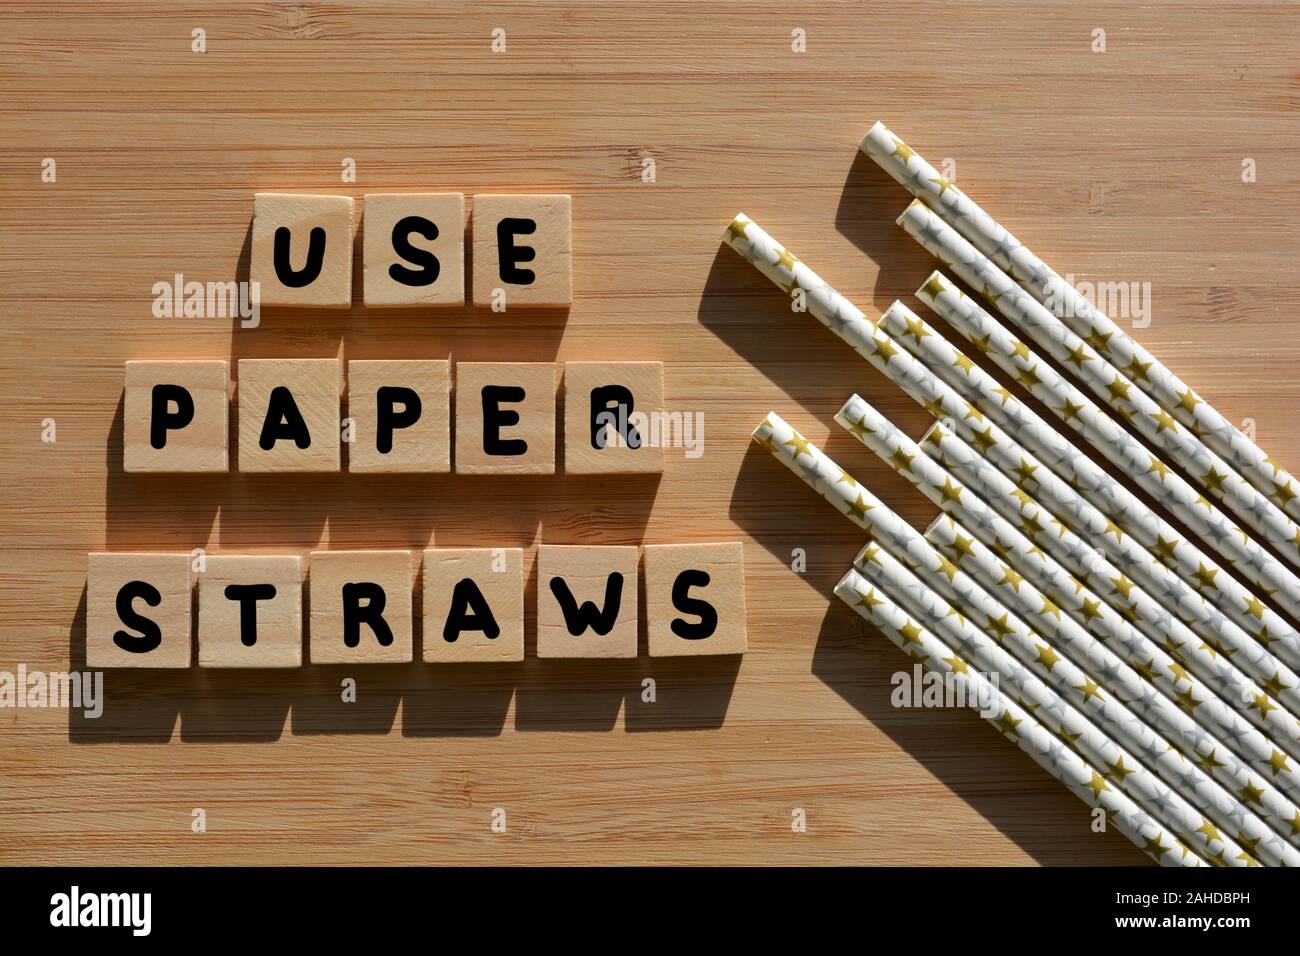 Utilizzare carta cannucce e parole in 3d alfabeto di legno lettere su fondo in legno con cannucce Foto Stock